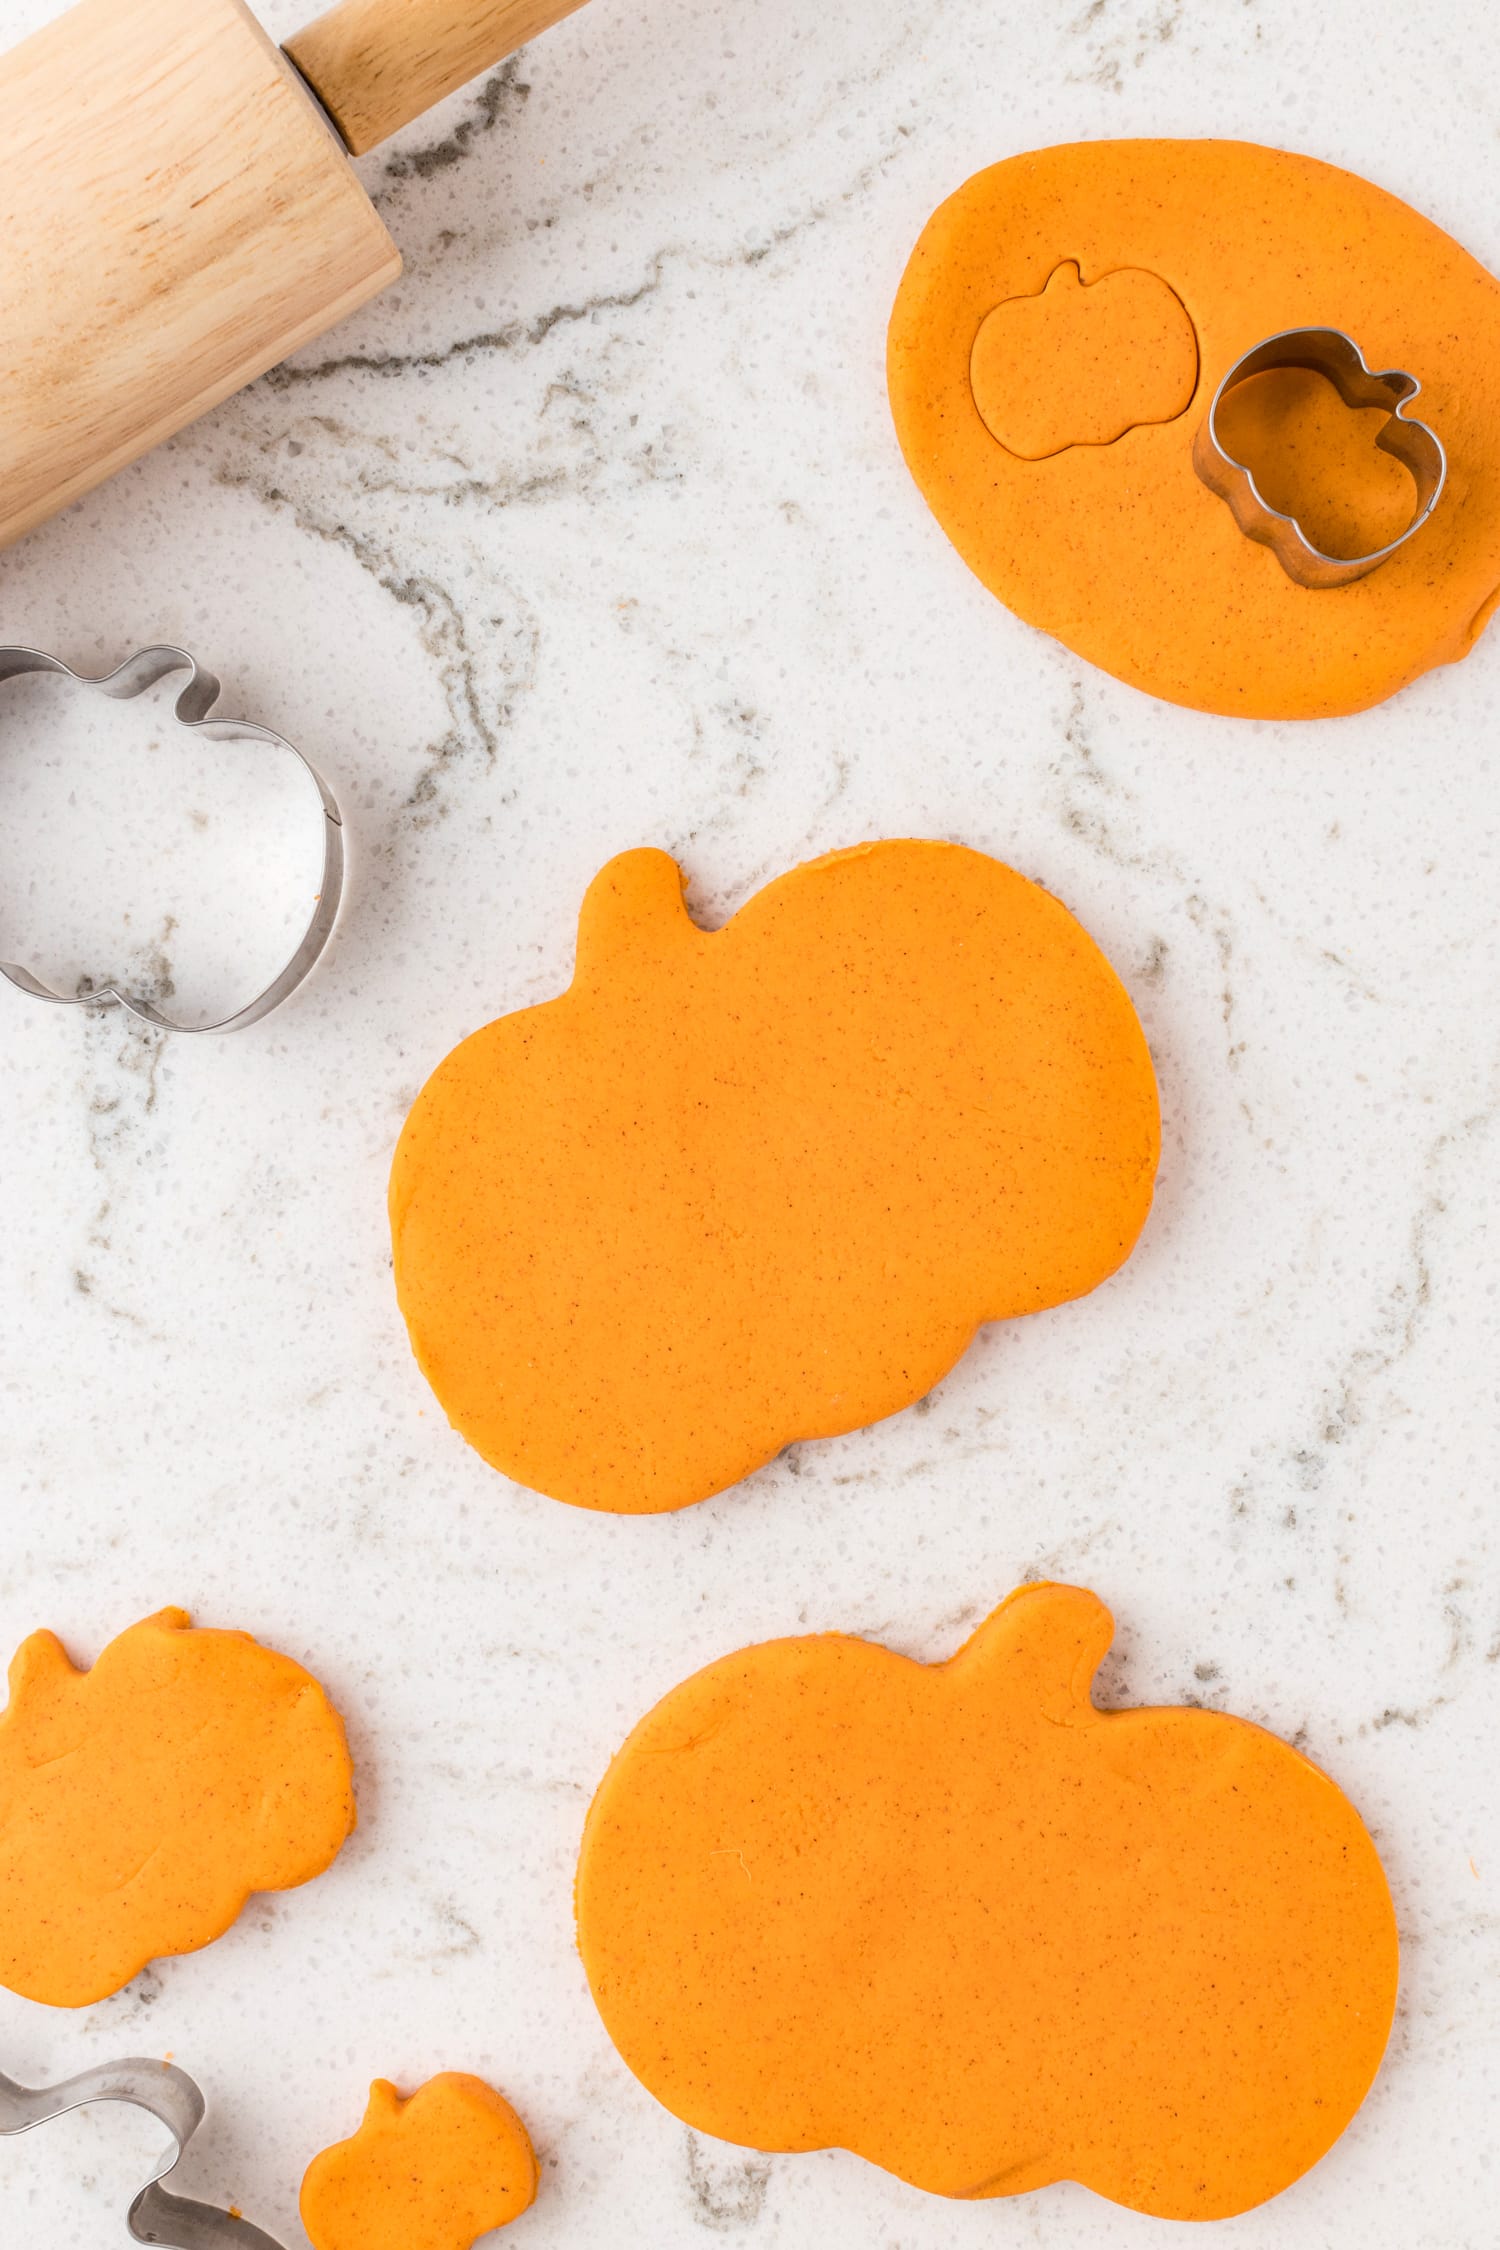 Homemade pumpkin playdough cut into pumpkin shapes